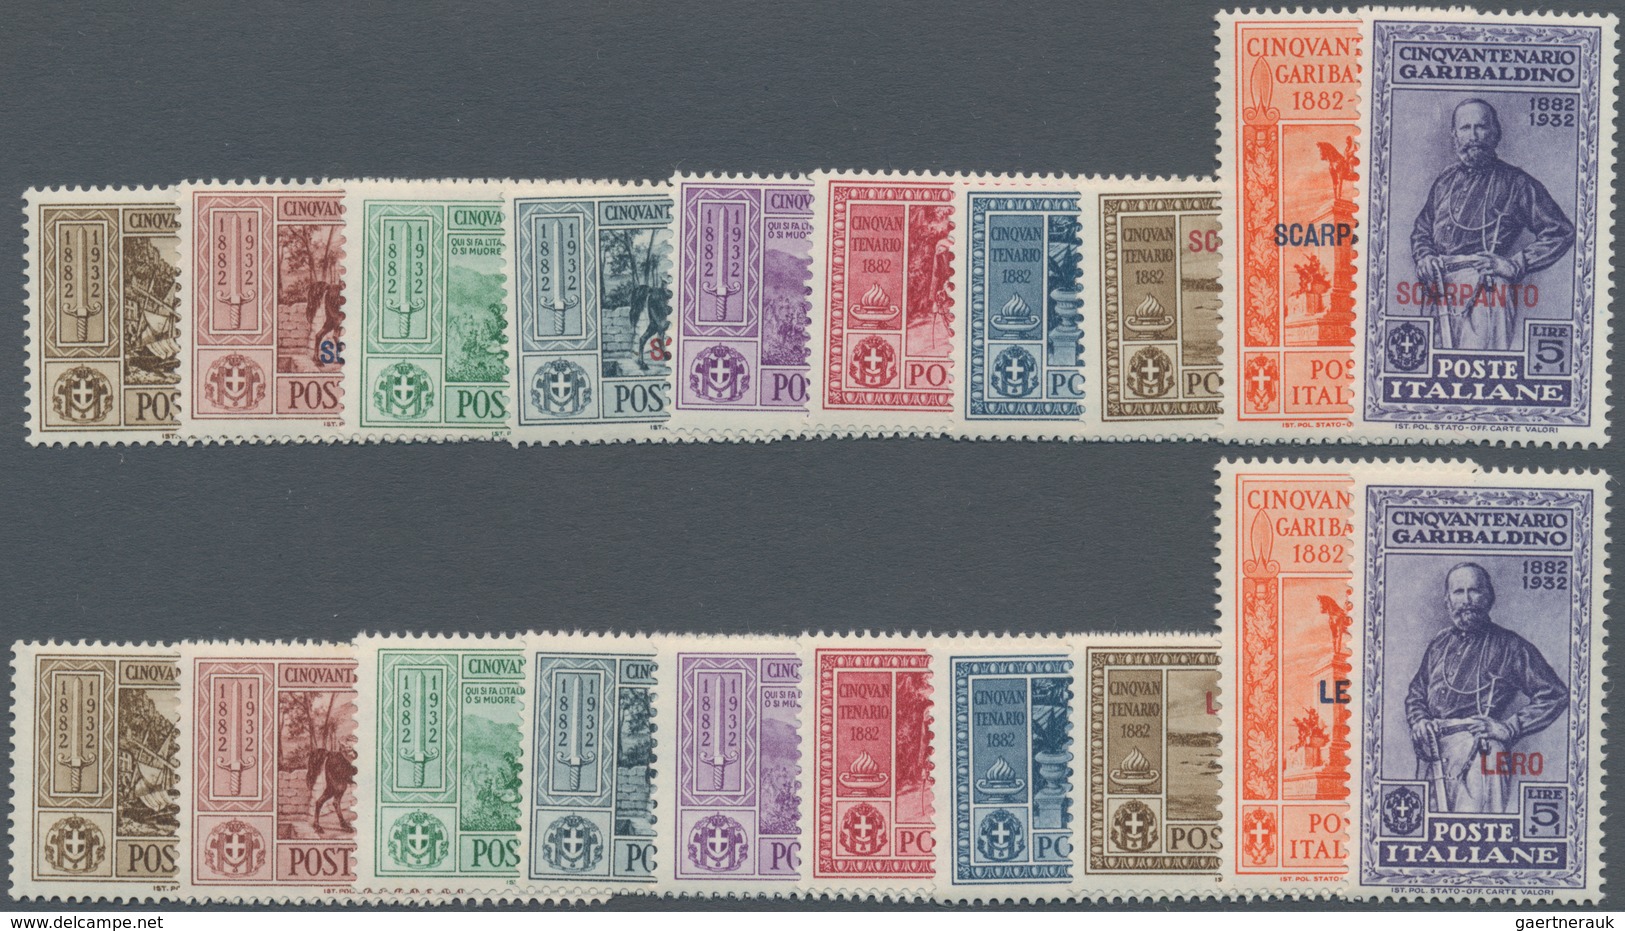 Ägäische Inseln: 1932, Garibaldi Four Complete Sets With Diff. Opts. Incl. LERO, NISIRO, SCARPANTO A - Aegean